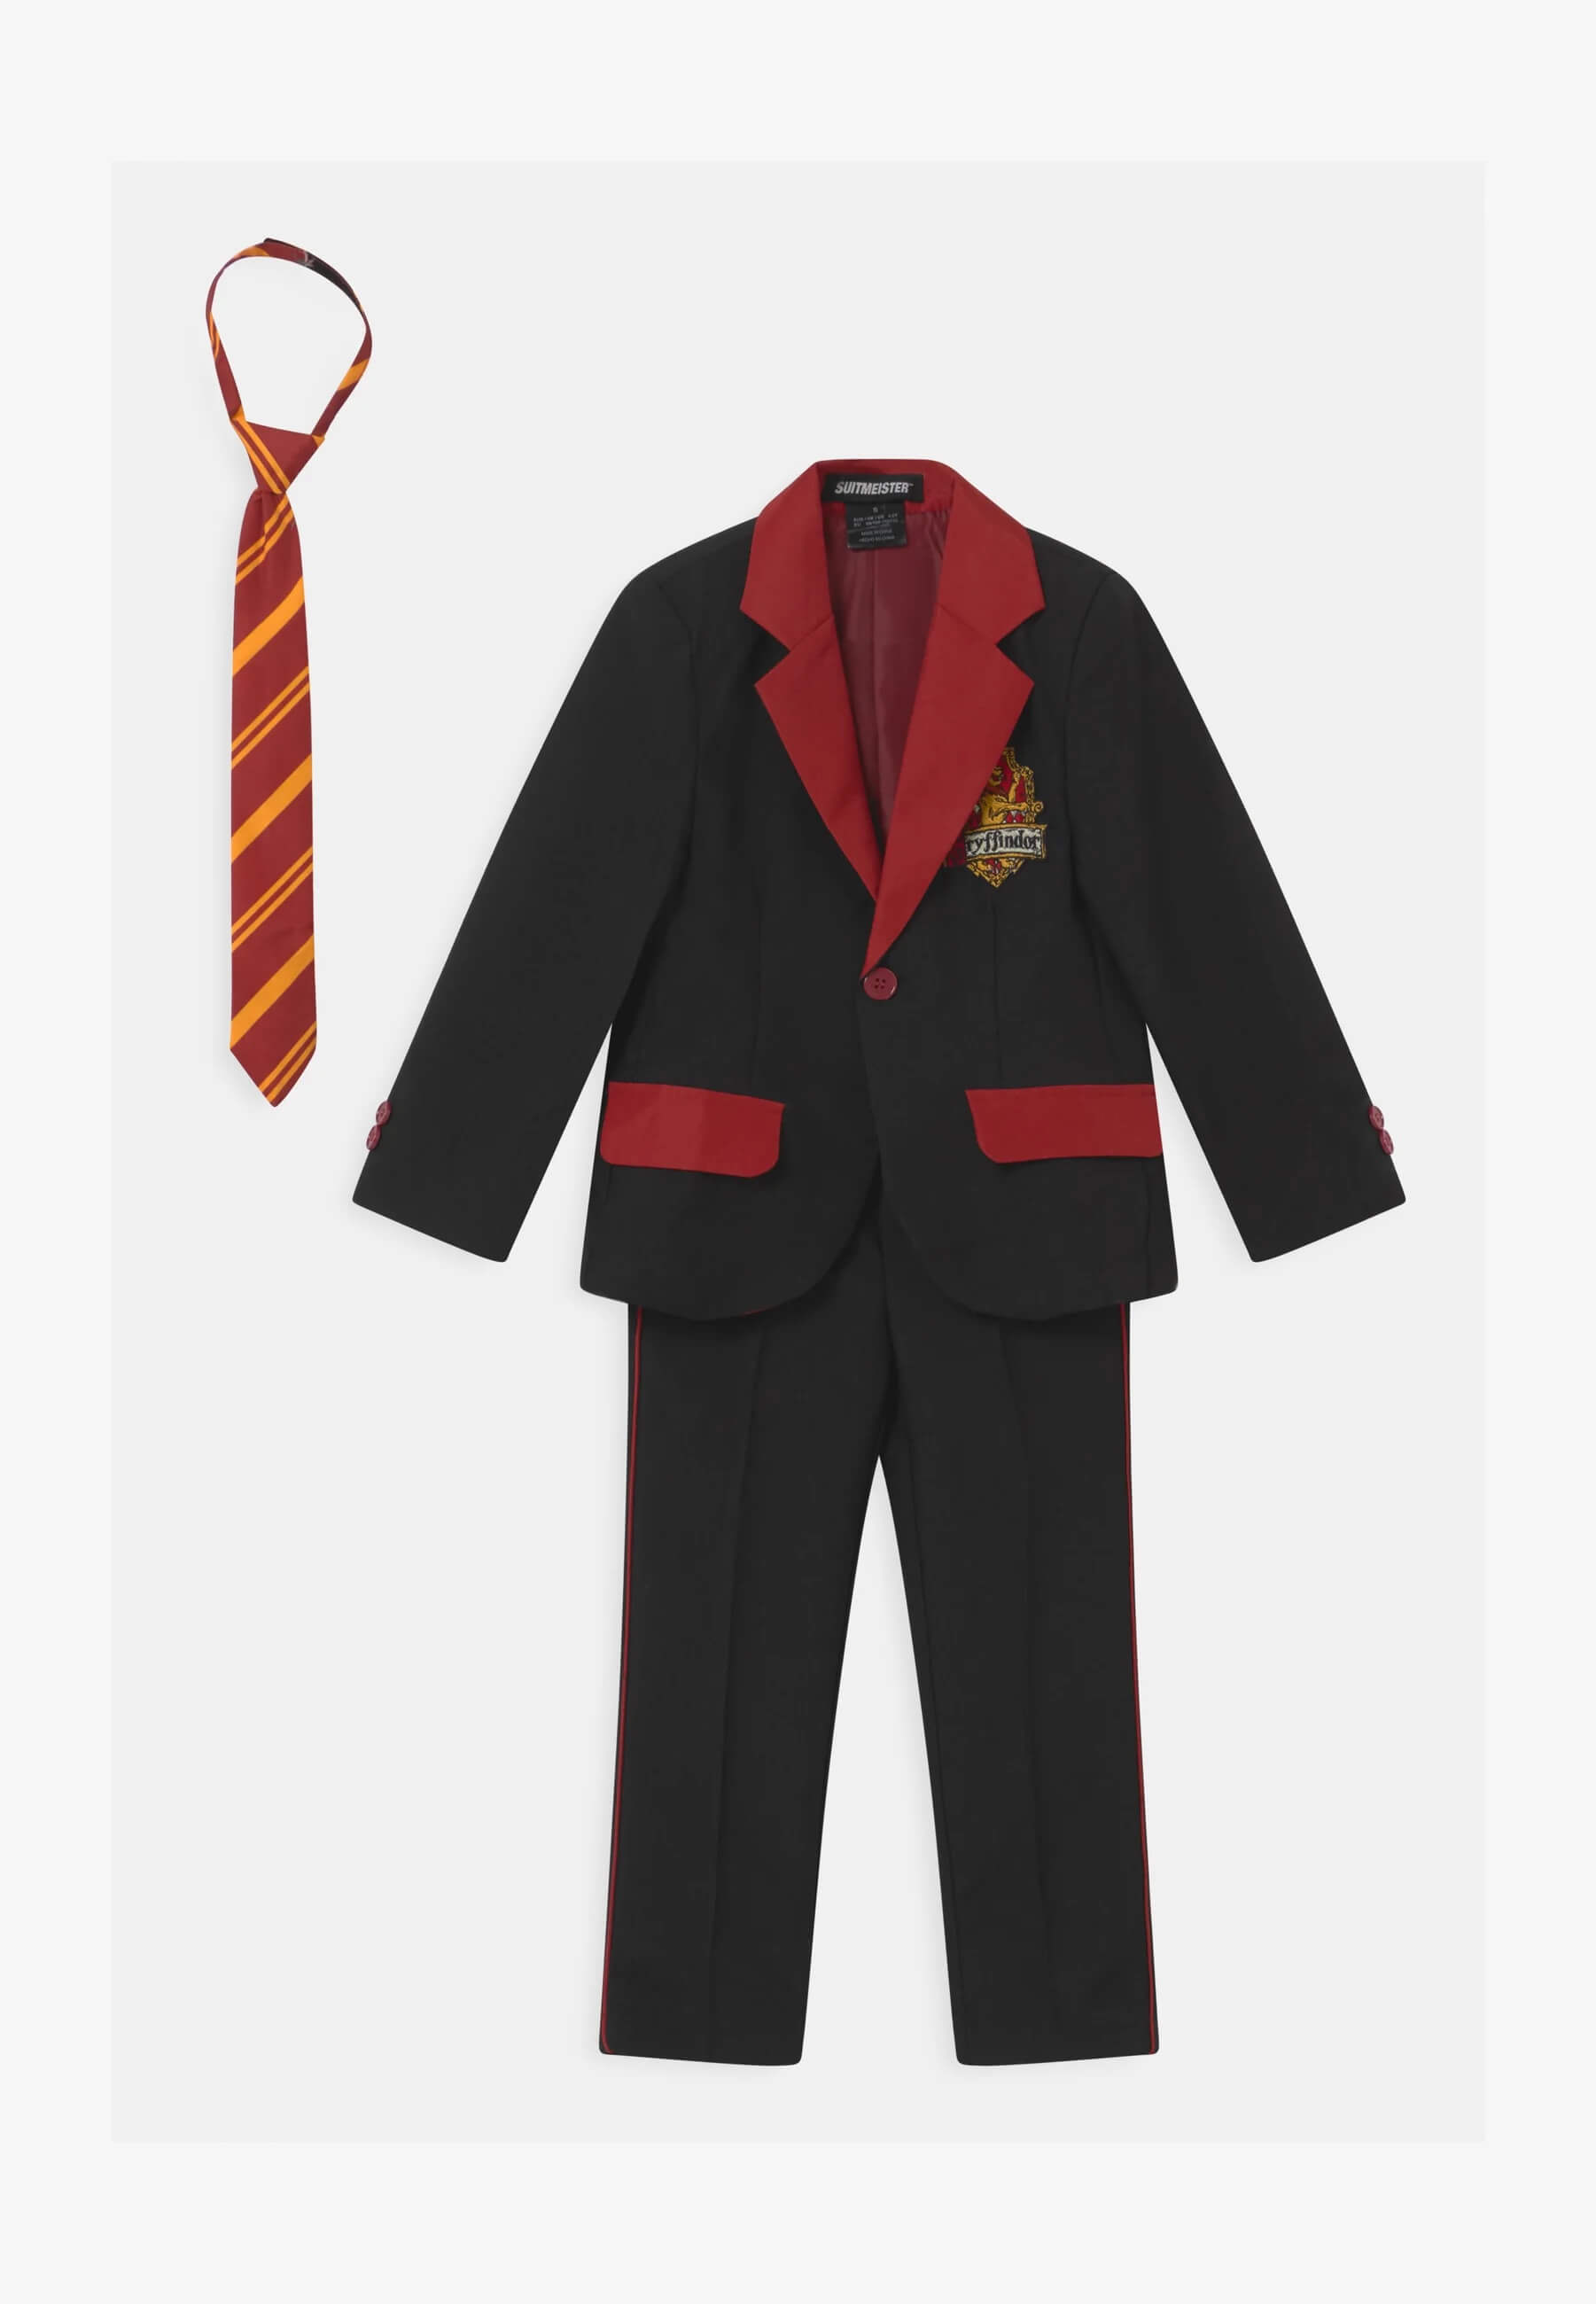 Кюстюм Suitmeister Harry Potter Gryffindor, черный/красный млечного пути в студенческом стиле гарри поттера галстук гриффиндор равенклав хуфлепуф накидка факультета слизерин костюм аксессуары га